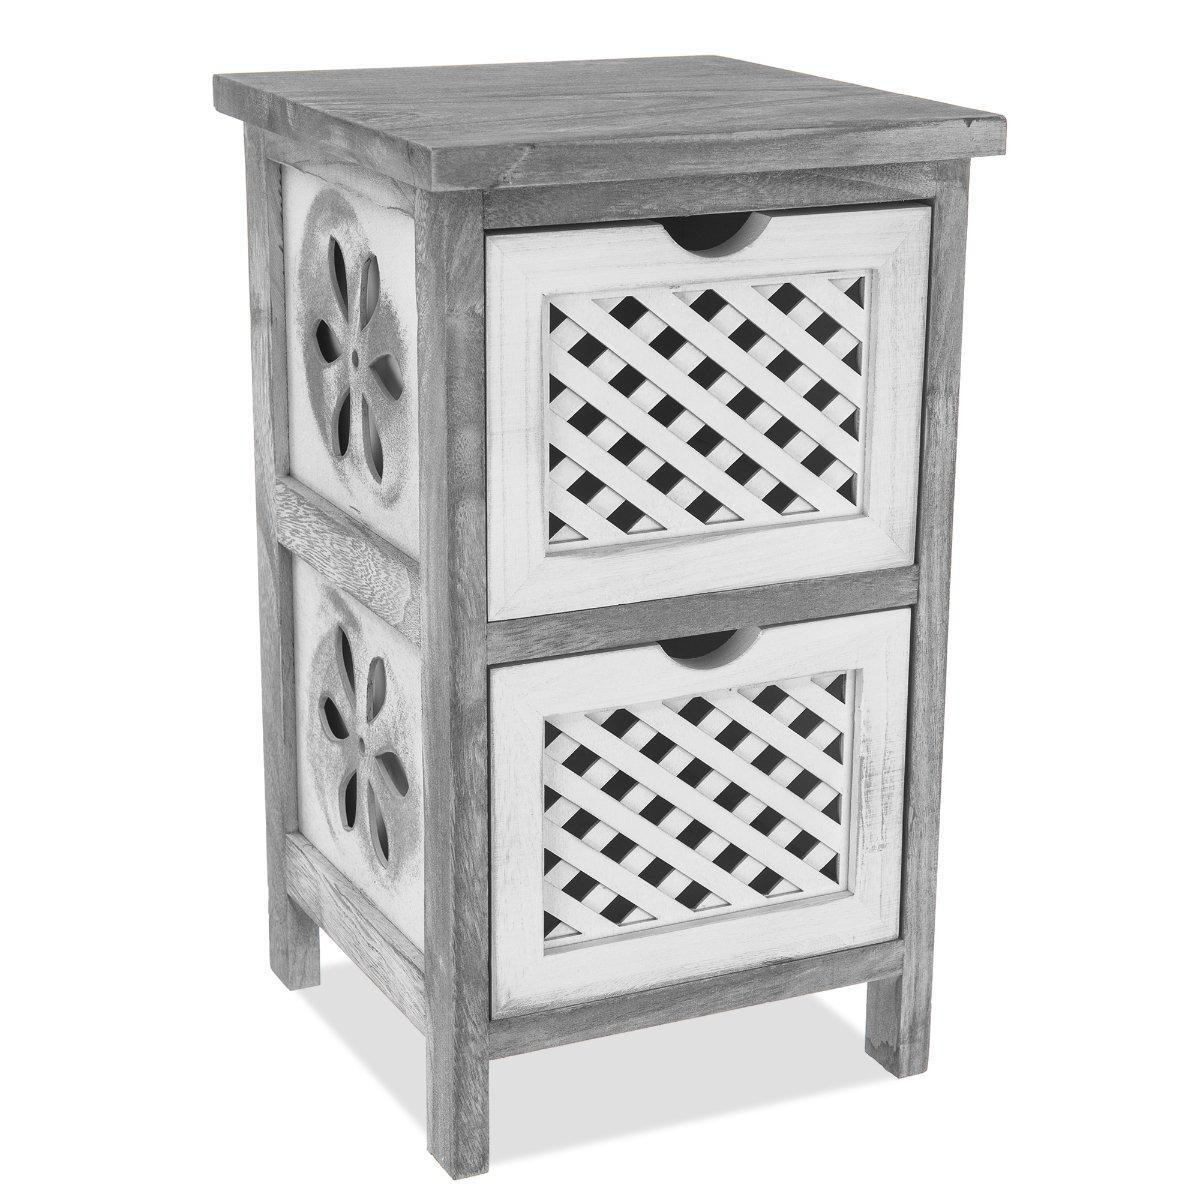 2-Tier Versatile Wooden Freestanding Drawer Cabinet - image 1